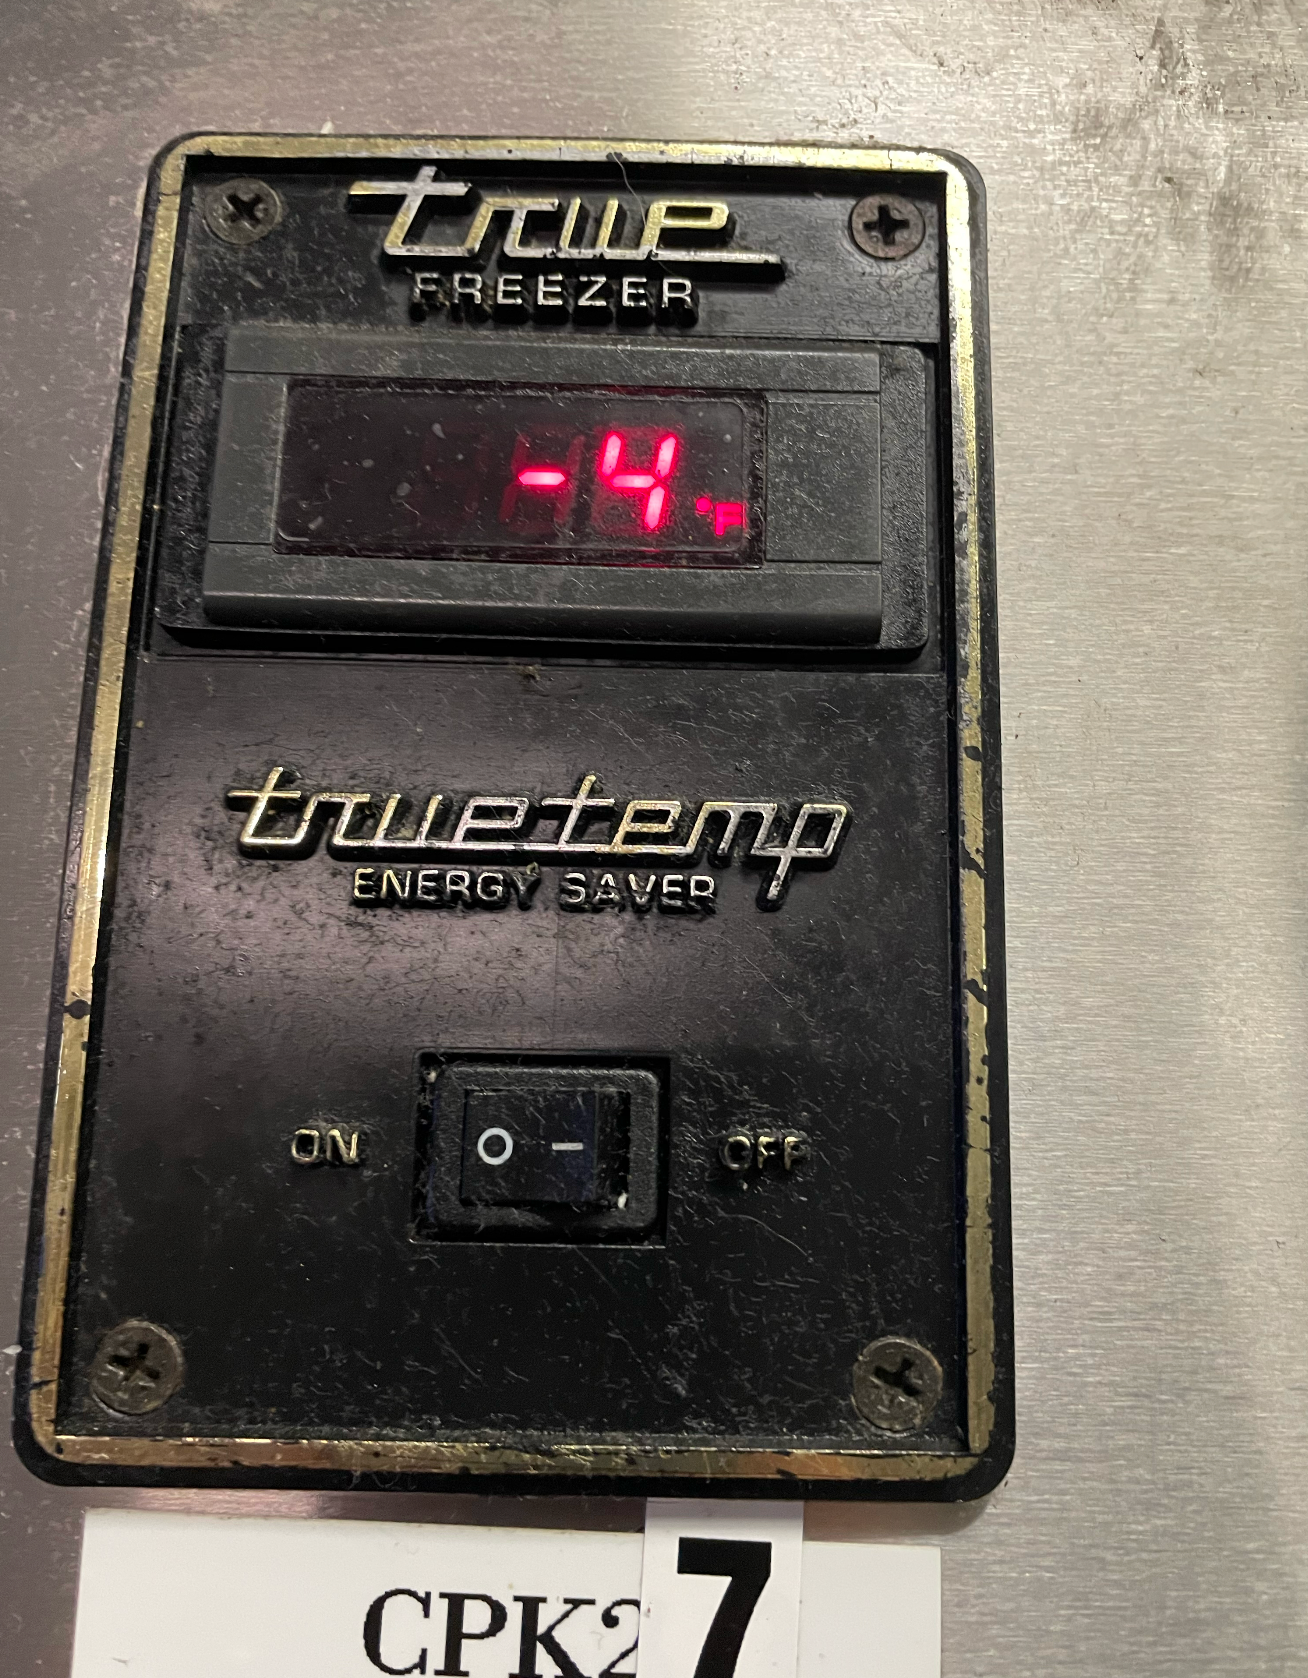 4 Door Freezer | True | Model # TR2F-4HS | 115 Volt